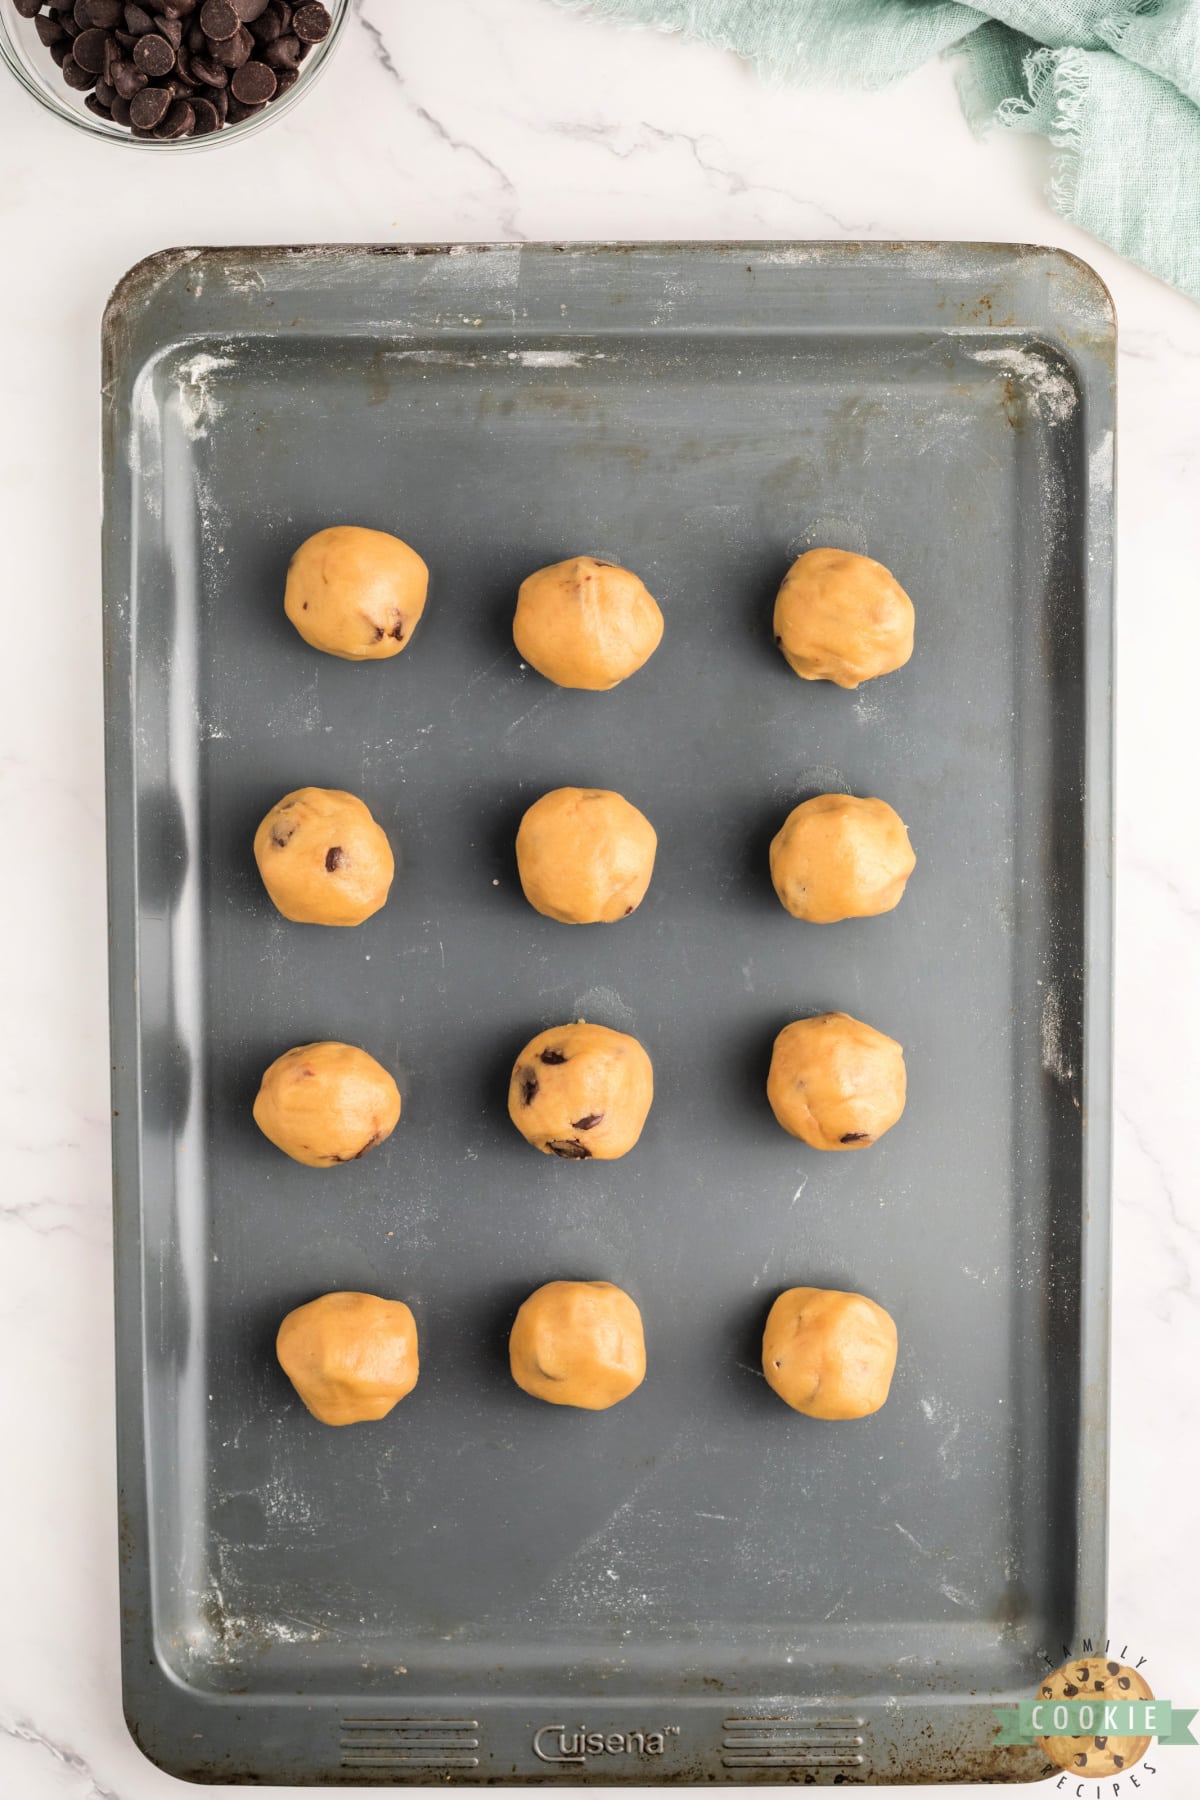 Edible cookie dough balls. 